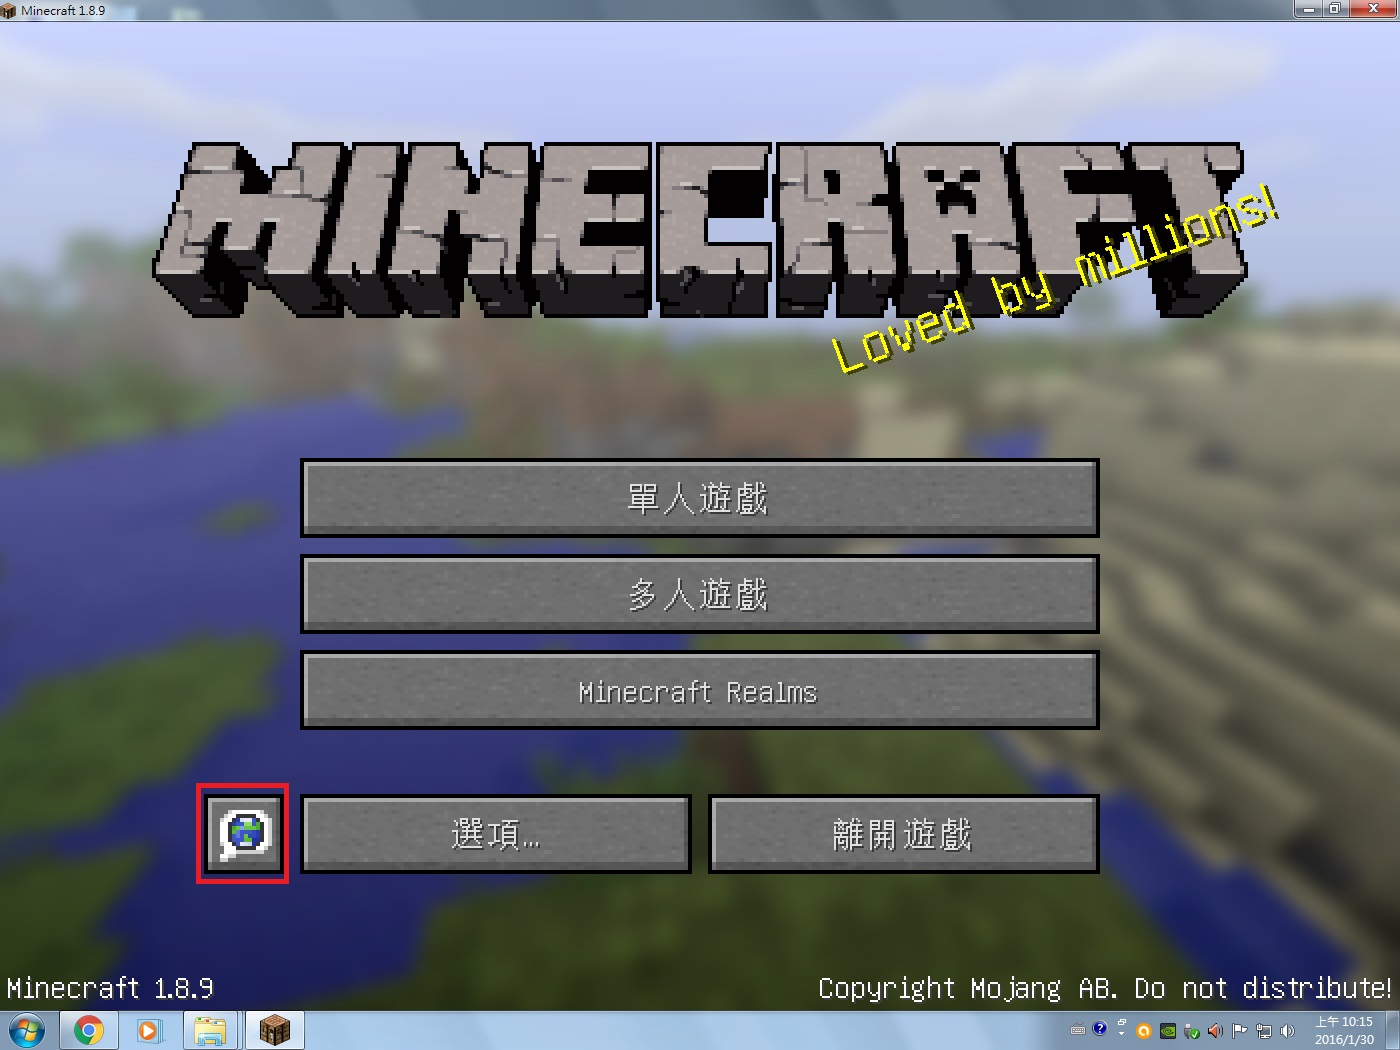 葳葳的網誌 Minecraft 我的世界 當個創世神 1 8 9 繁體中文破解版 文章最下方附上1 9版本教學